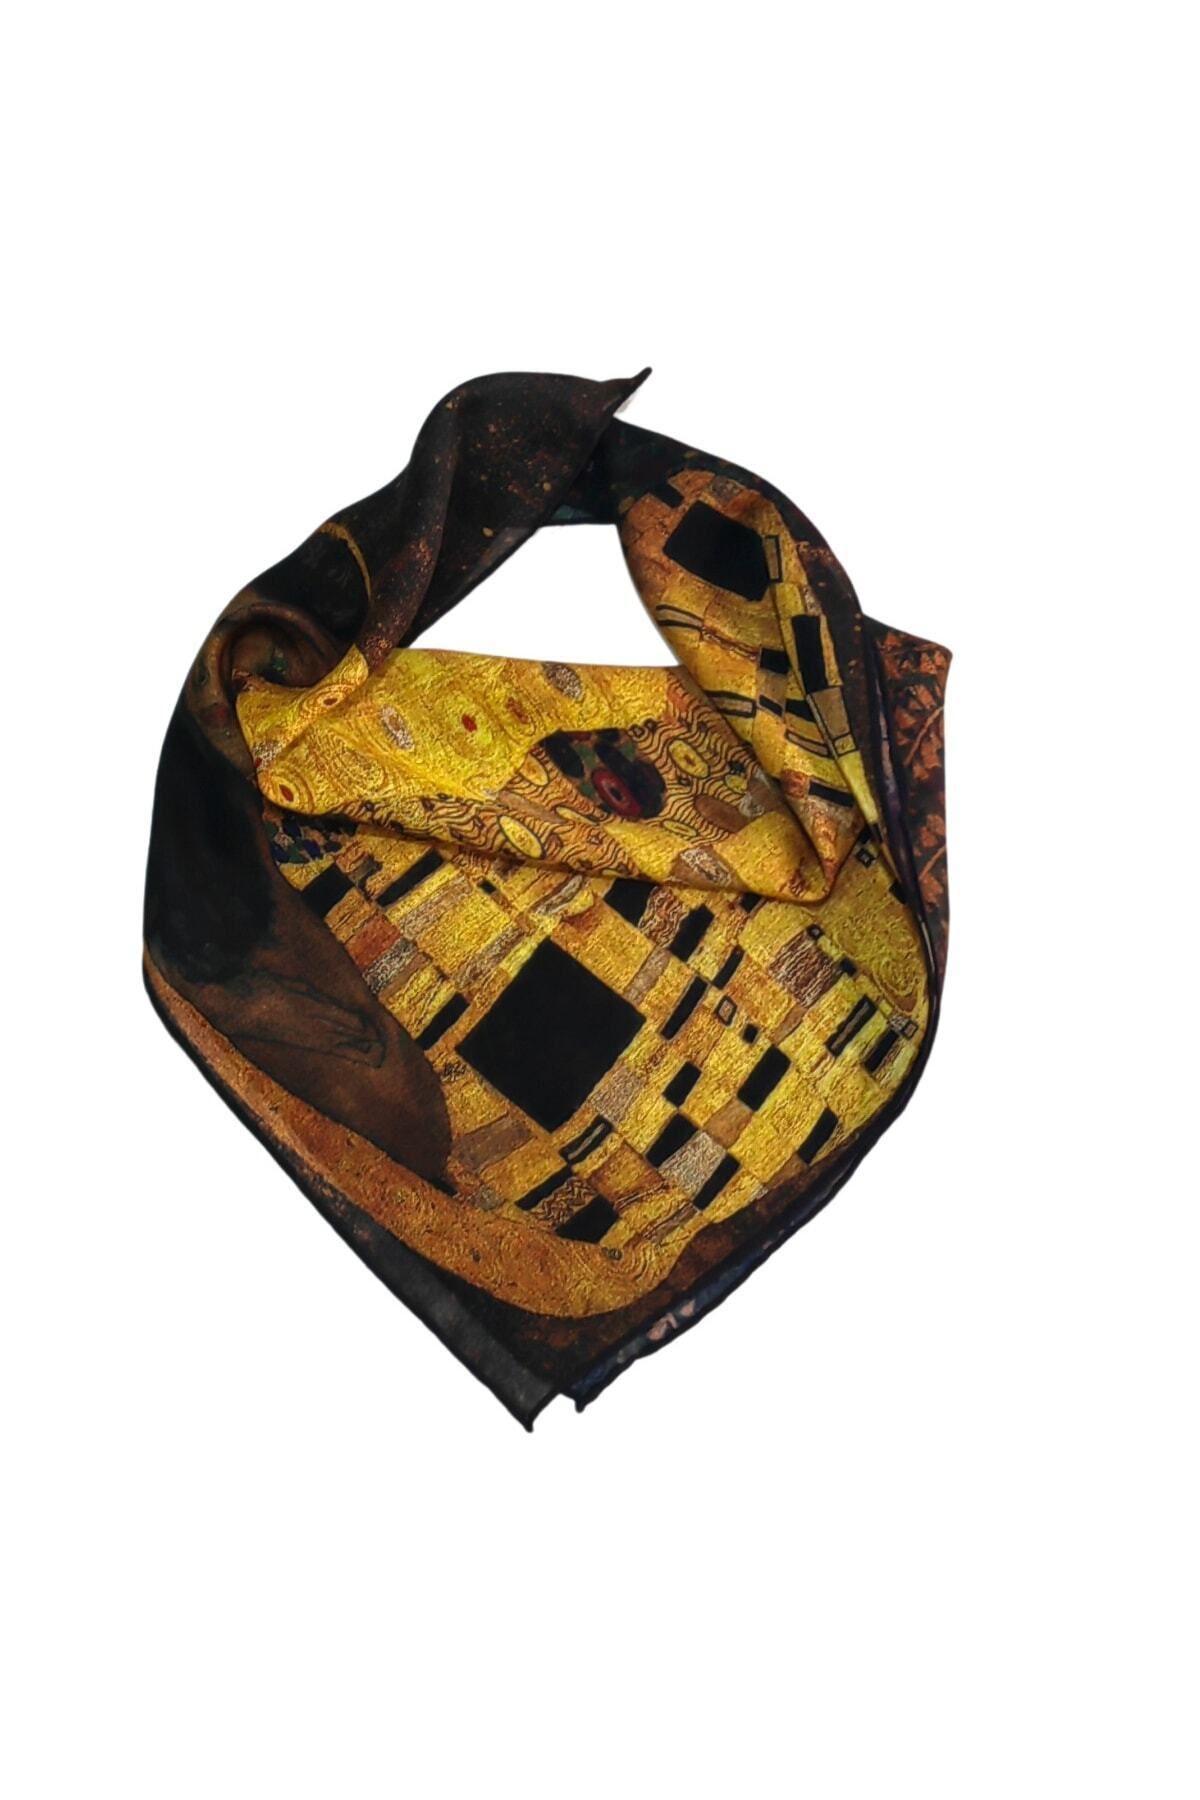 Nomads Felt Fular Bandana Gustav Klimt The Kiss